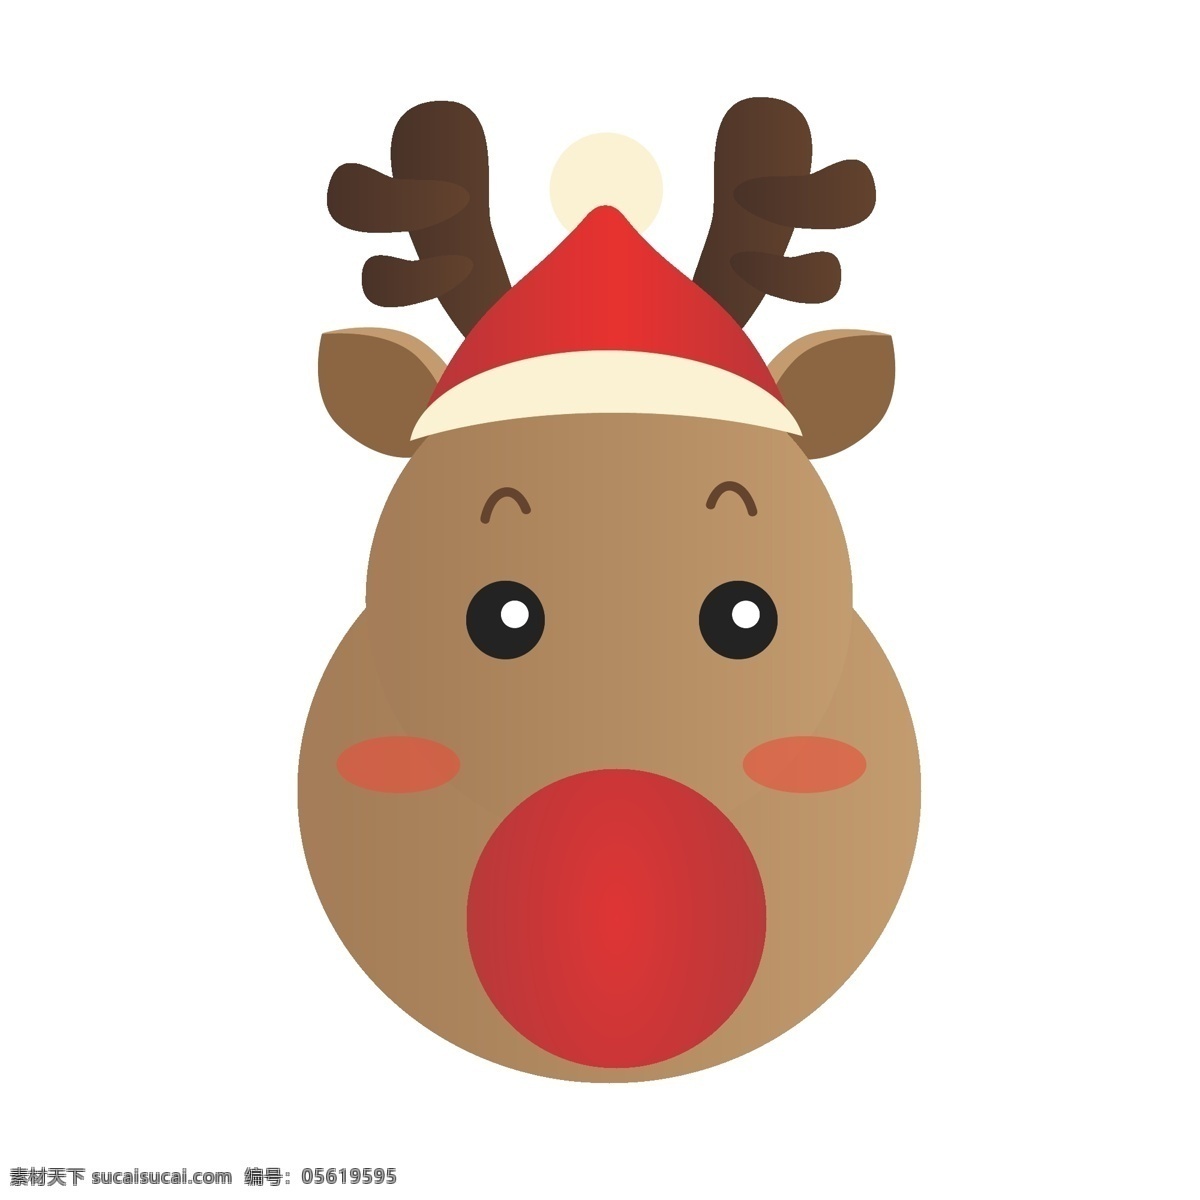 圣诞节 卡通 手绘 鹿 元素 麋鹿 小鹿 冬季 十二月 矢量图 红帽子 感恩节 鹿角 红鼻子